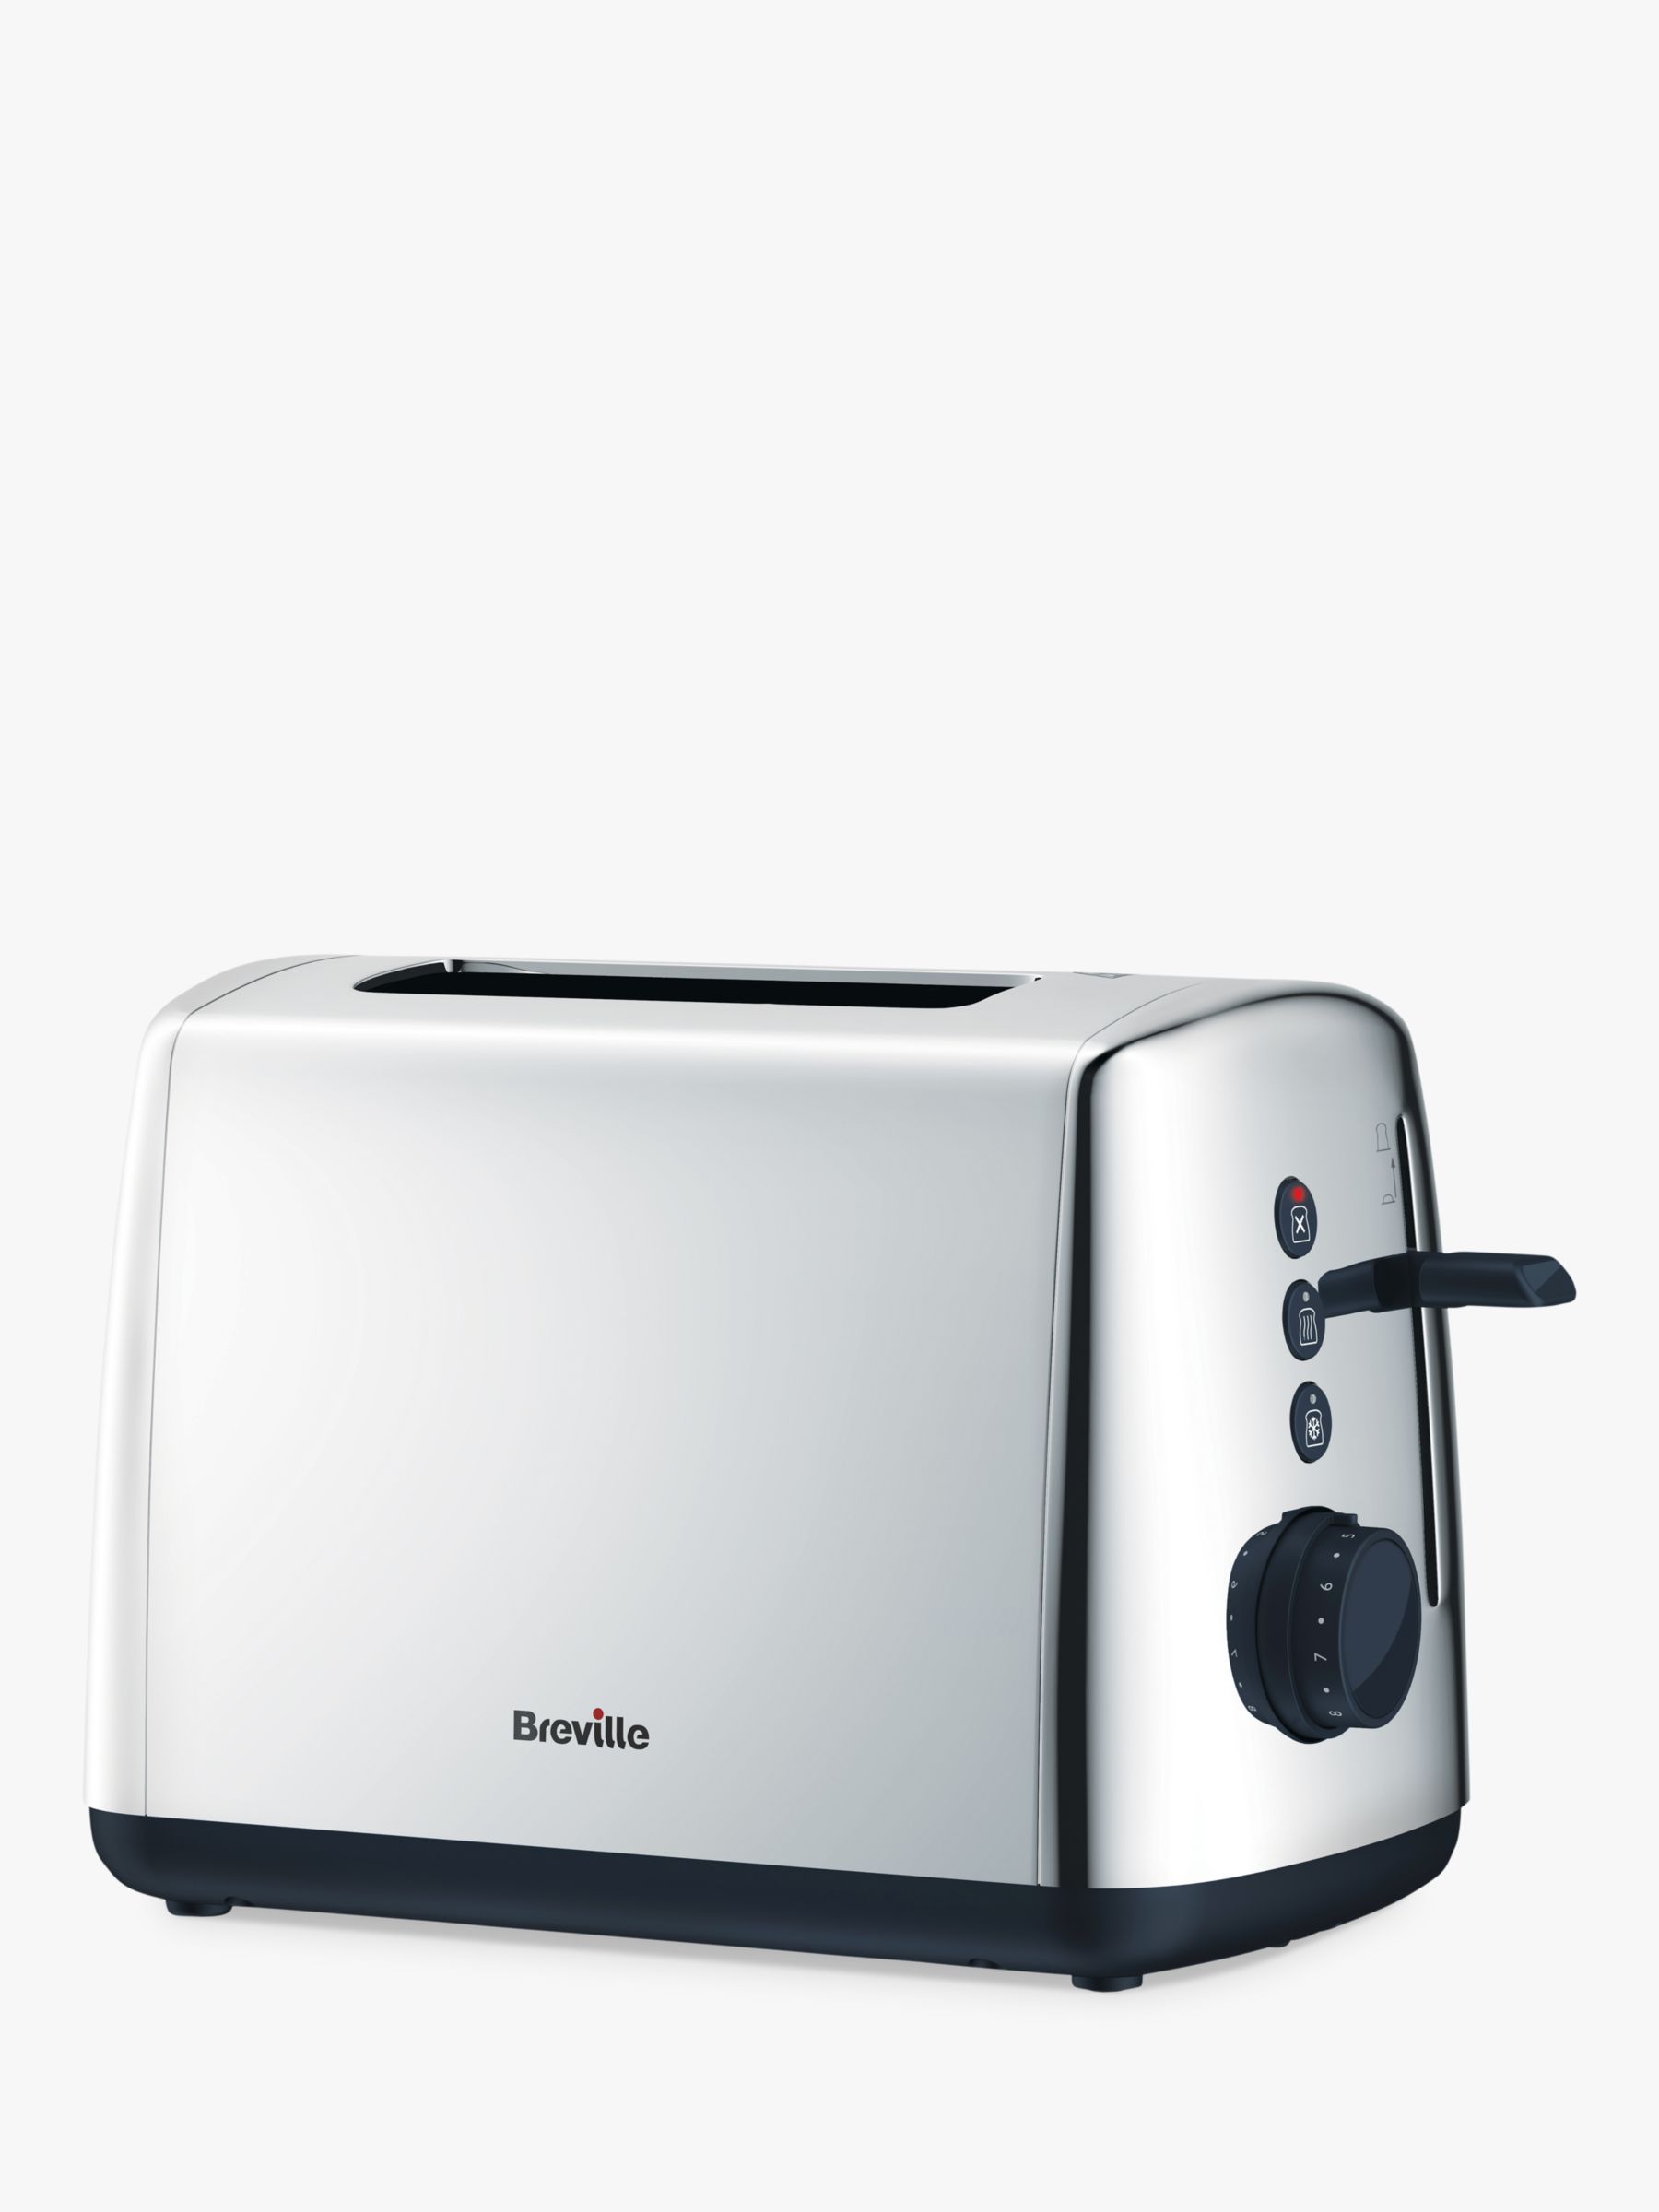 Breville VTT548 2-Slice Toaster, Stainless Steel